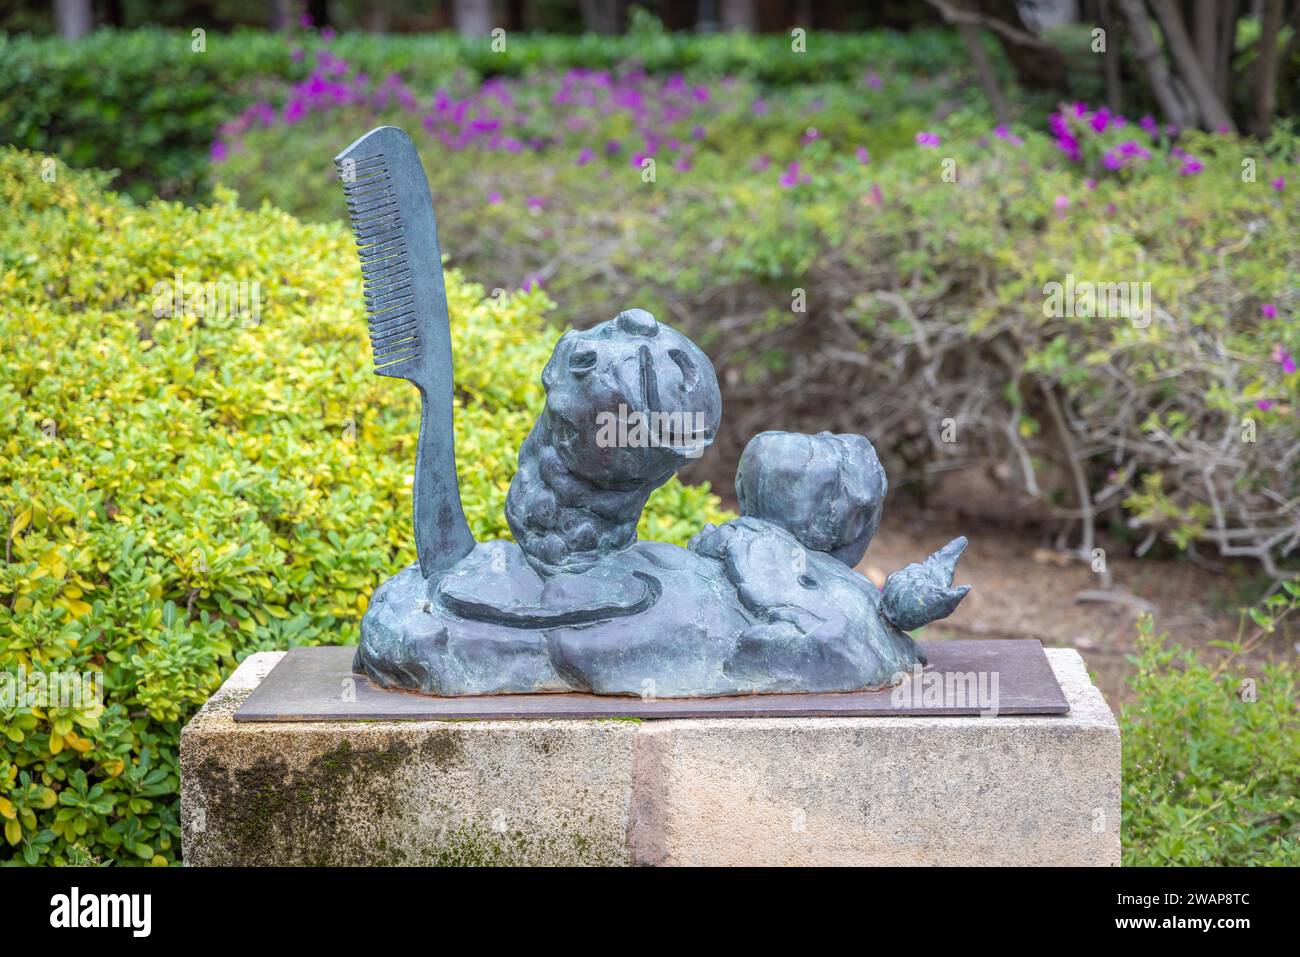 Bronzeskulptur Personnage et Oiseau von Joan Miró, Garten im Marivent Palast, königliche Sommerresidenz, Palma, Mallorca, Spanien, Europa Stockfoto